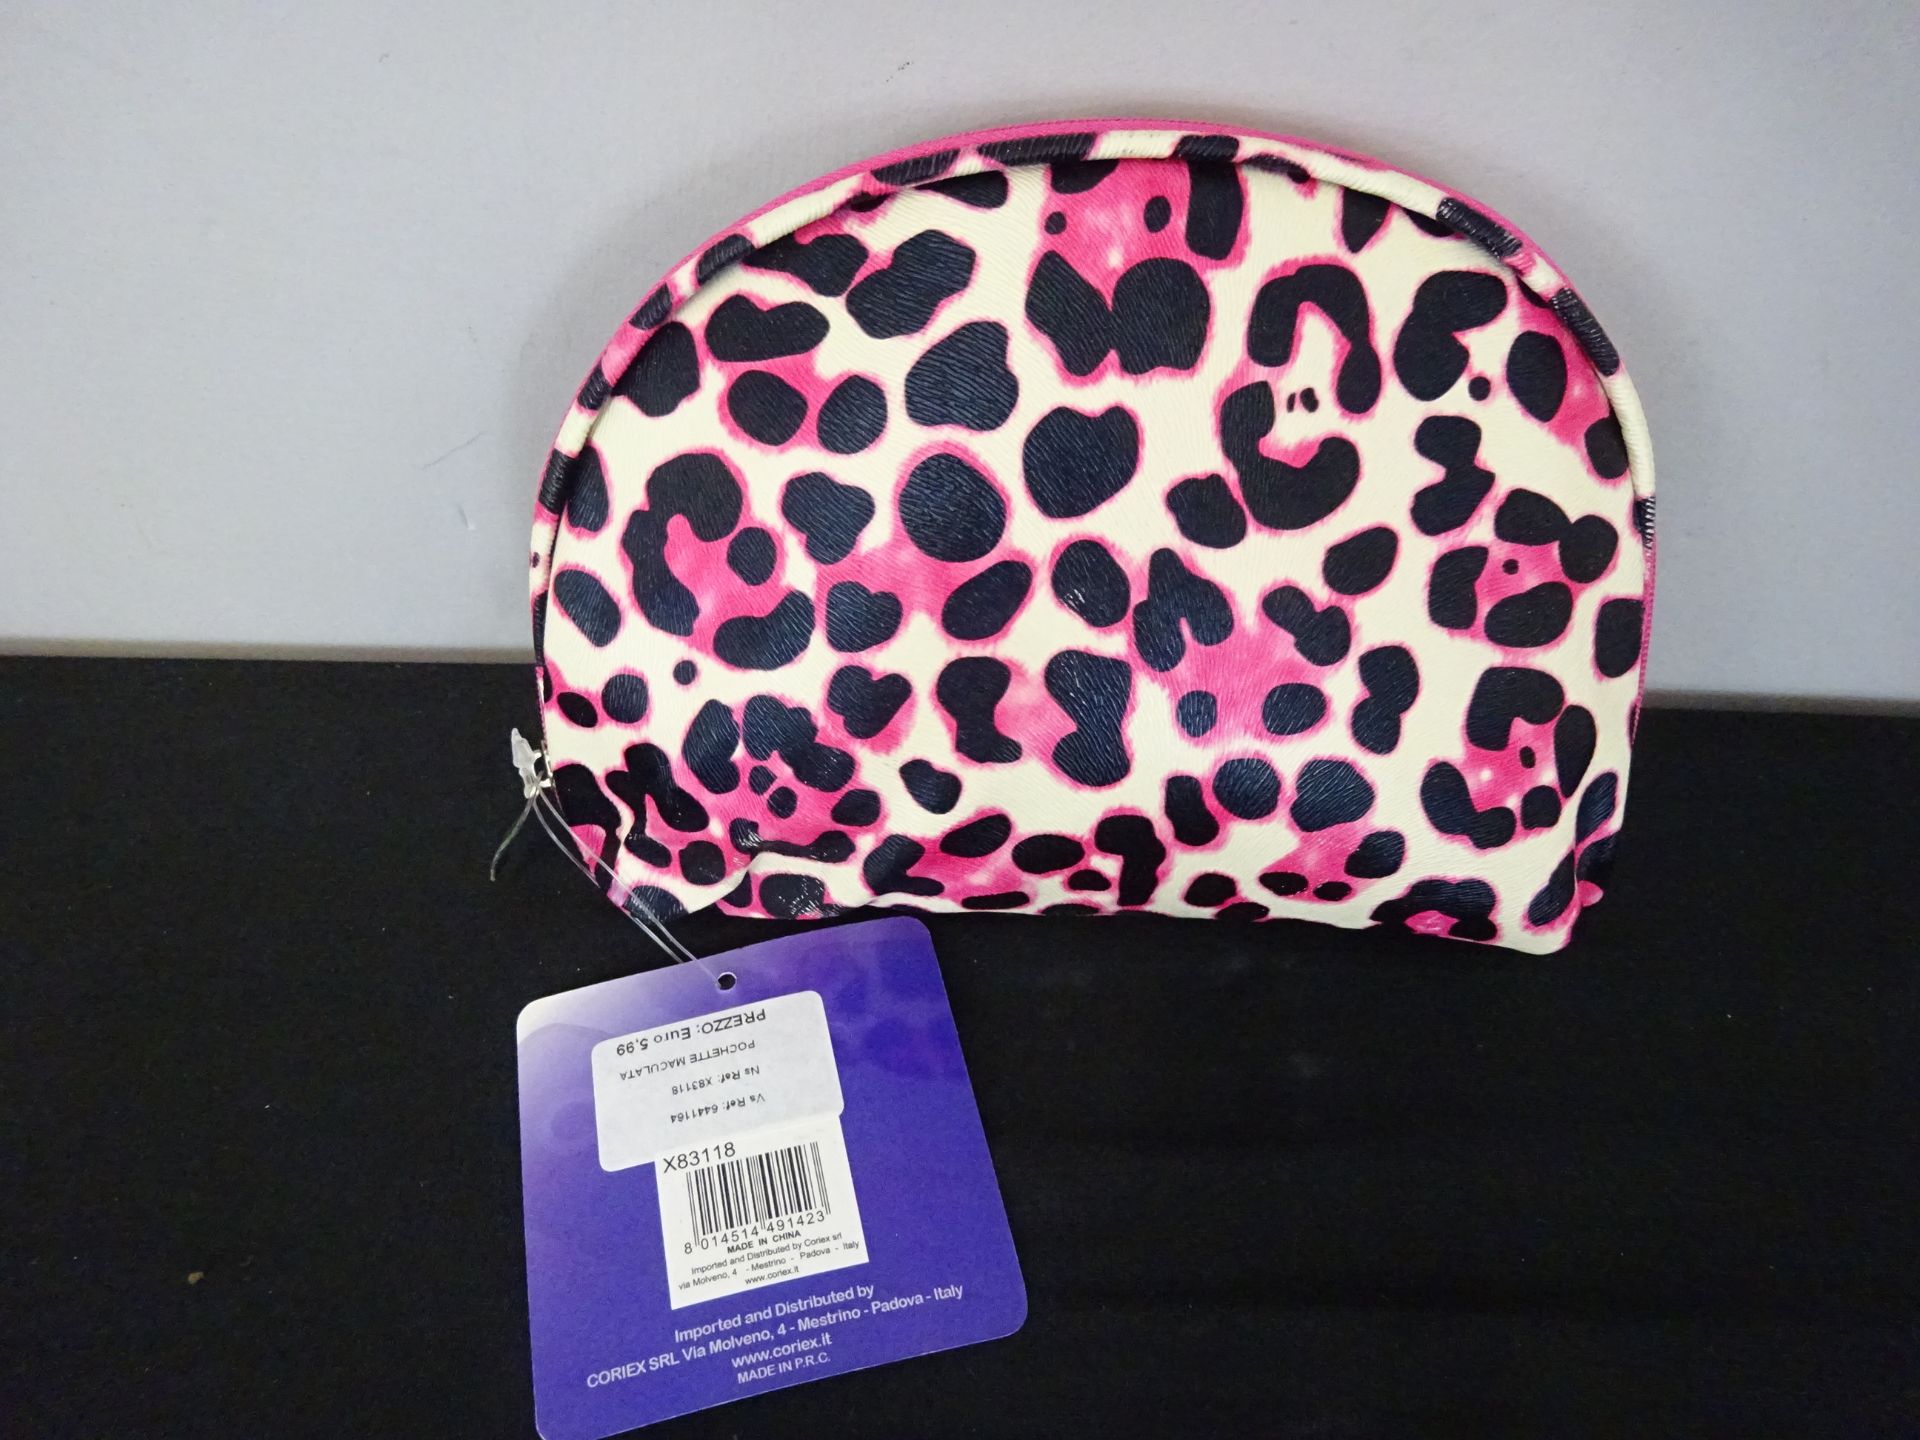 New Pink Cheetah Patterened Cosmetic Bag